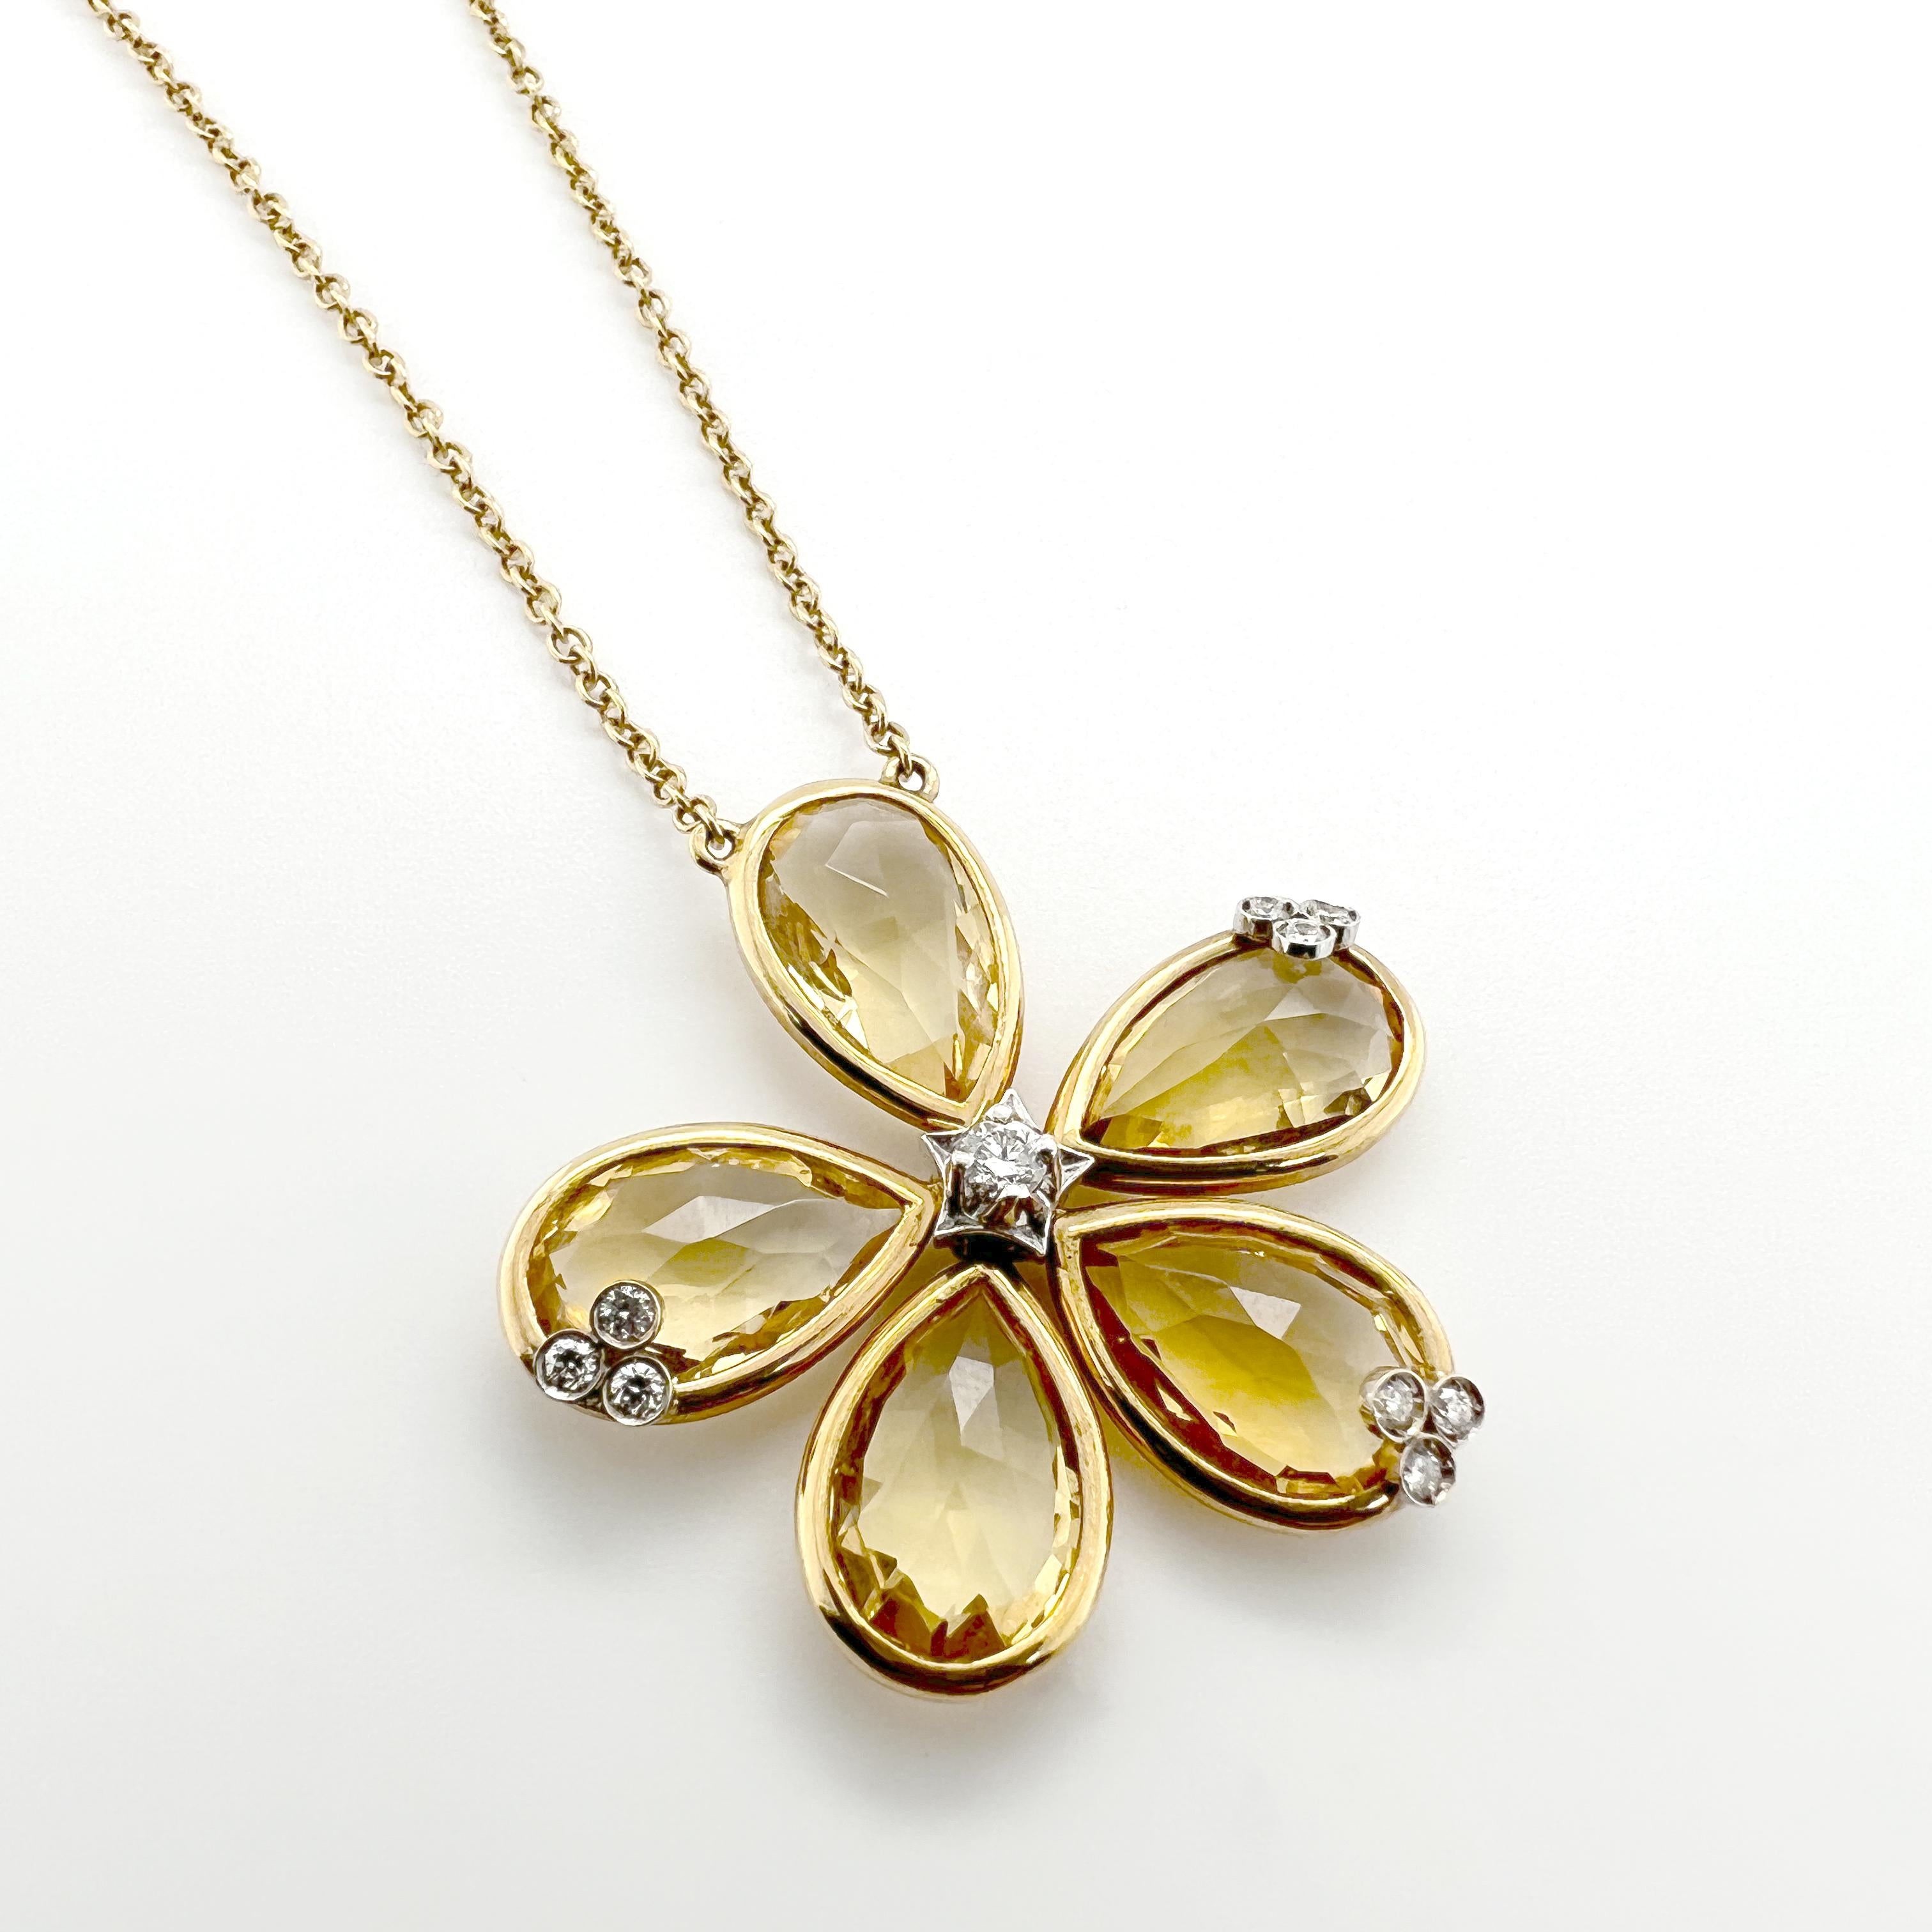 Dieses Collier aus 18-karätigem Gold, das zur Bouquet-Kollektion gehört, zeigt einen atemberaubenden Blumenanhänger, der mit Citrinquarz-Tropfen und Diamanten verziert ist. Das Blumenmuster sorgt für eine zarte und feminine Ästhetik, die jedem